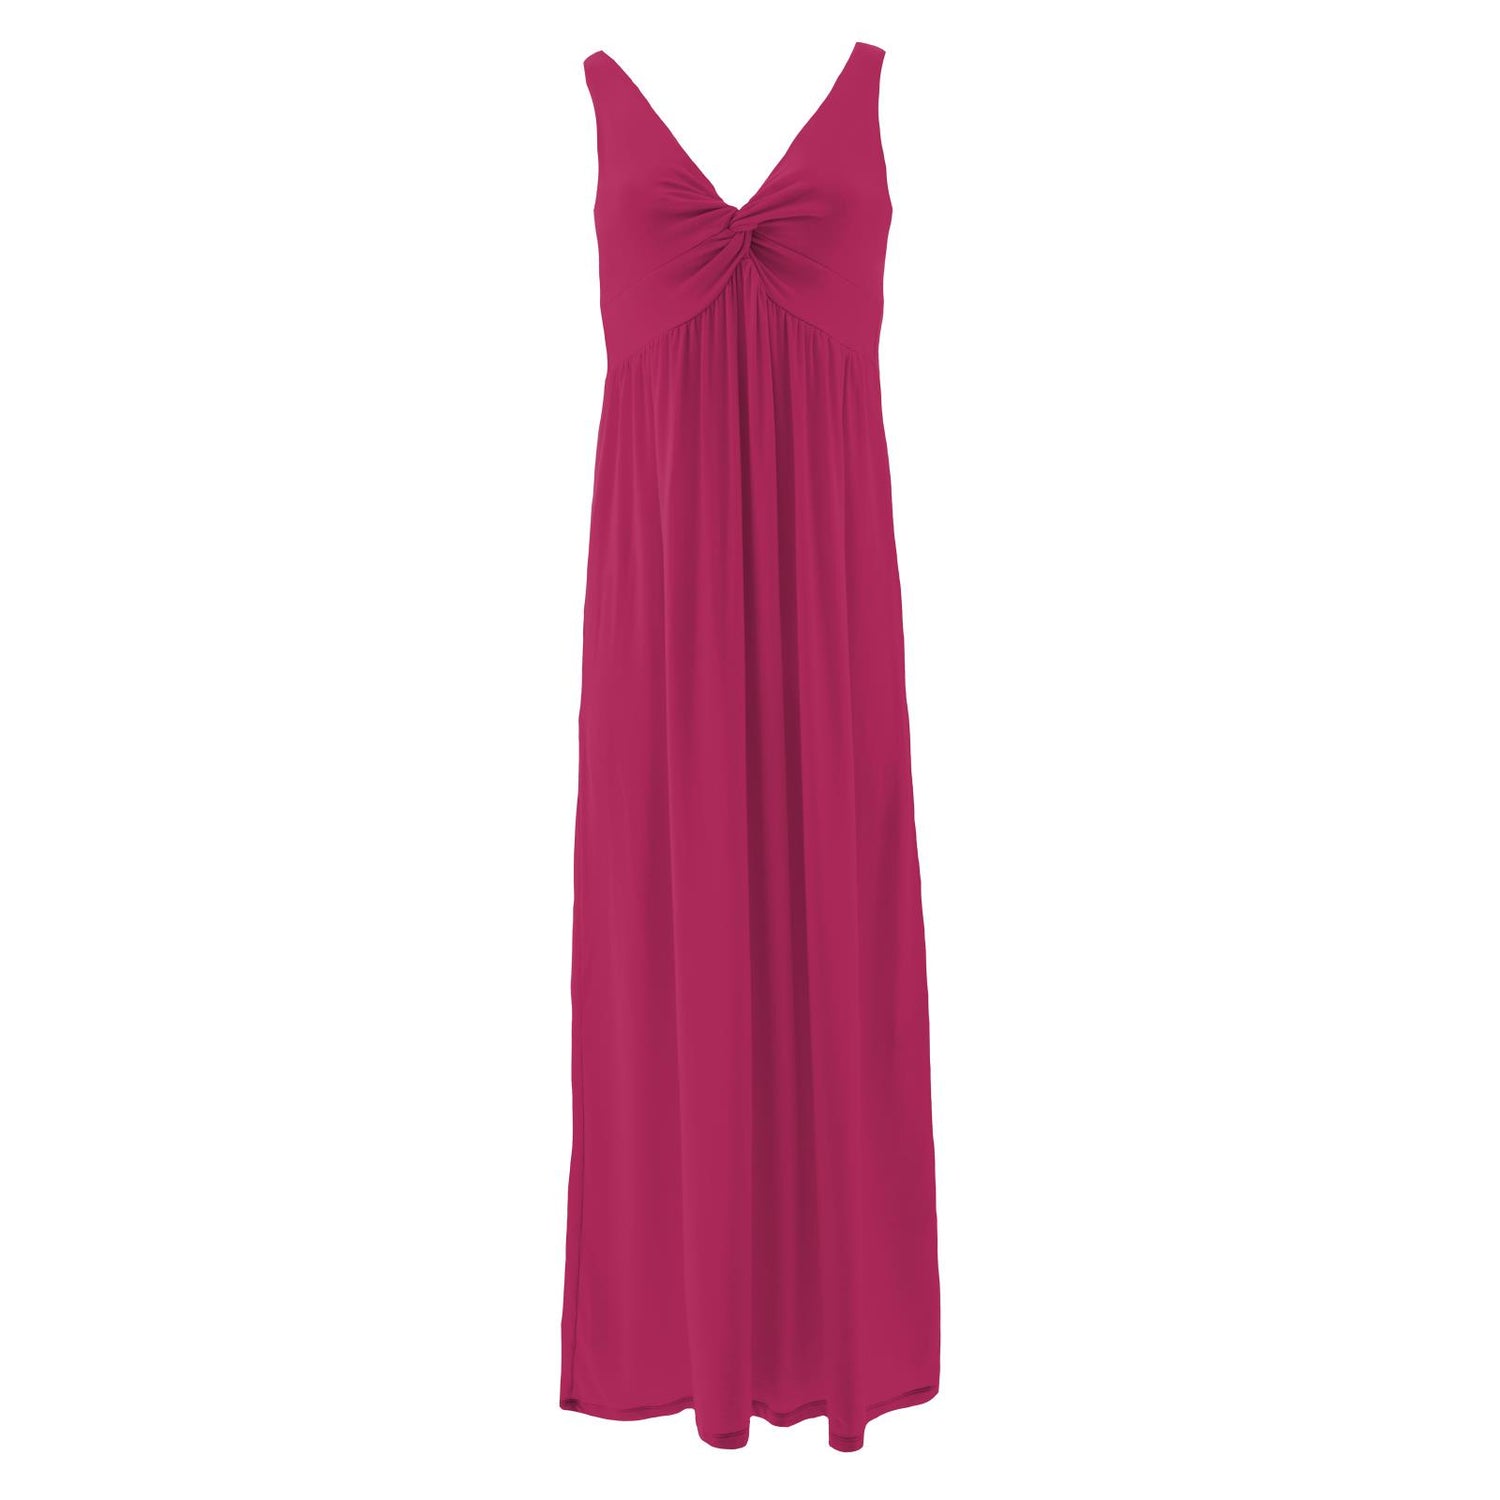 Women's Simple Twist Nightgown in Berry